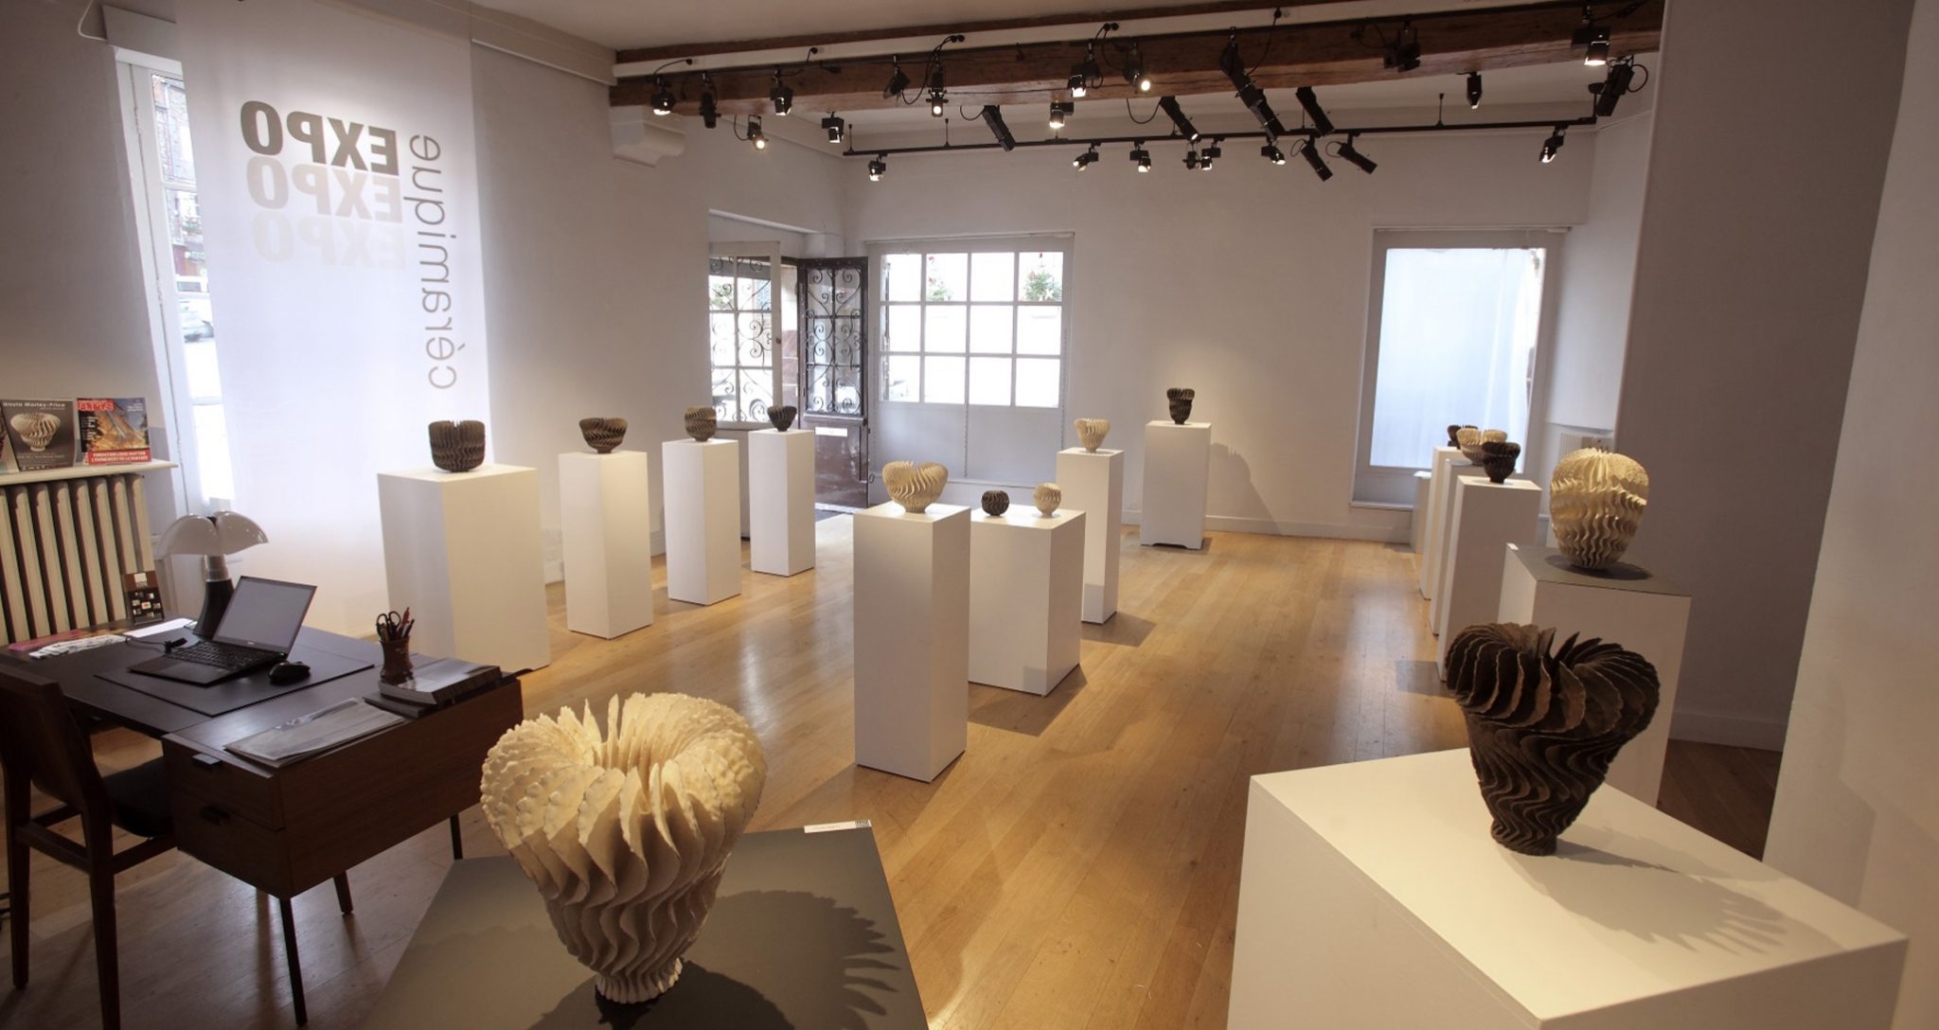 Ursula Morley-Price - sculpture céramique - exposition céramique - galerie de céramiques en Bourgogne Franche Comté - expo de céramiques